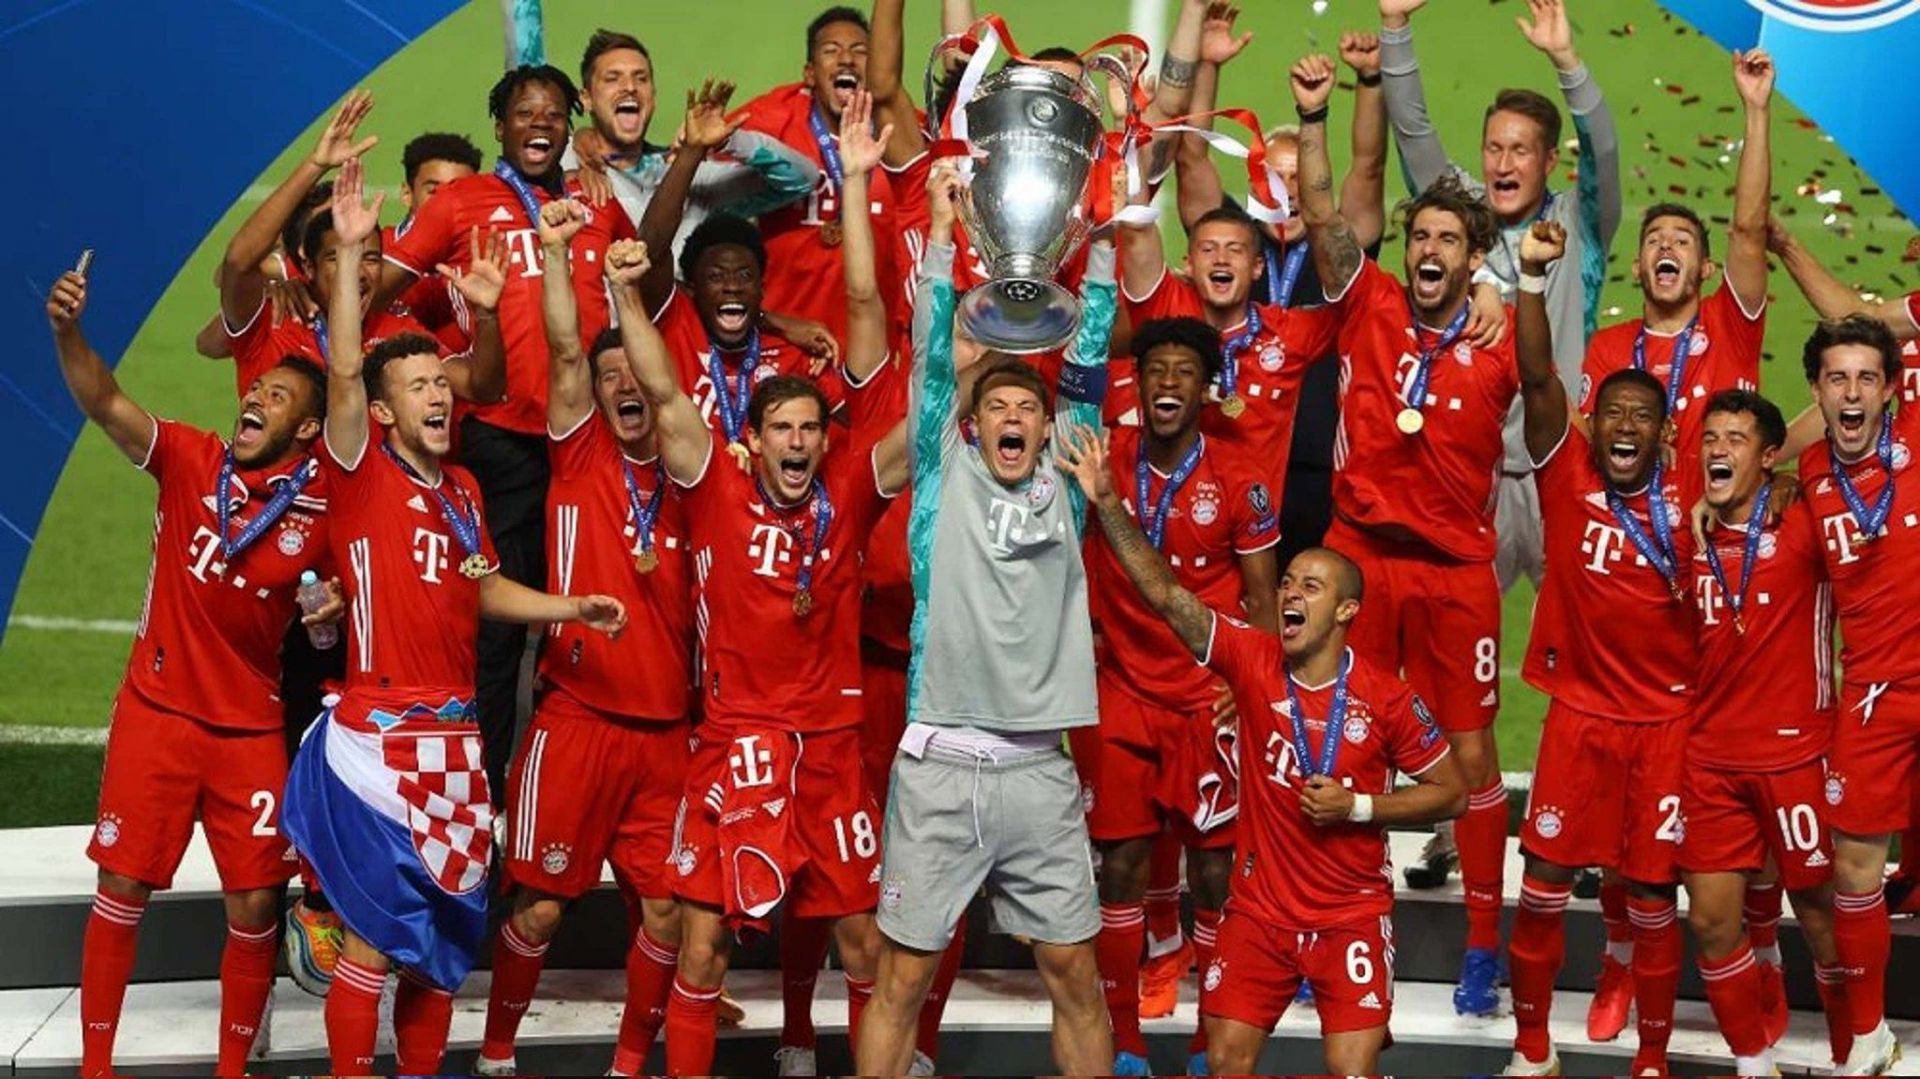 Bayern Munich: 2019-20 treble-winning team